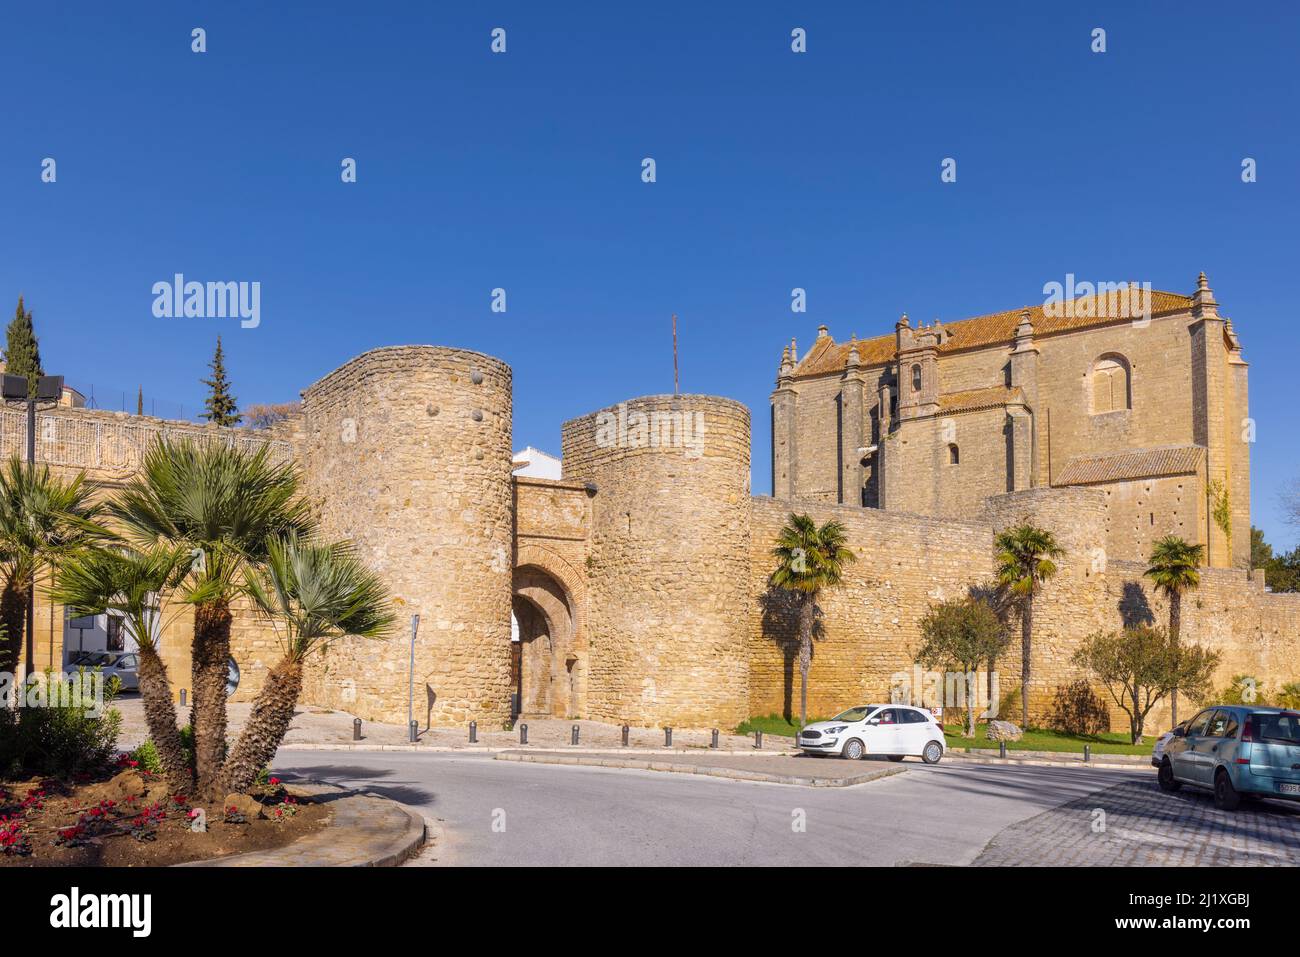 Le 13th siècle Puerto de Almocabar, ou Almocabar porte et les murs de la ville, Ronda, Malaga province, Andalousie, sud de l'Espagne. Puerto de Almocabar vient f Banque D'Images